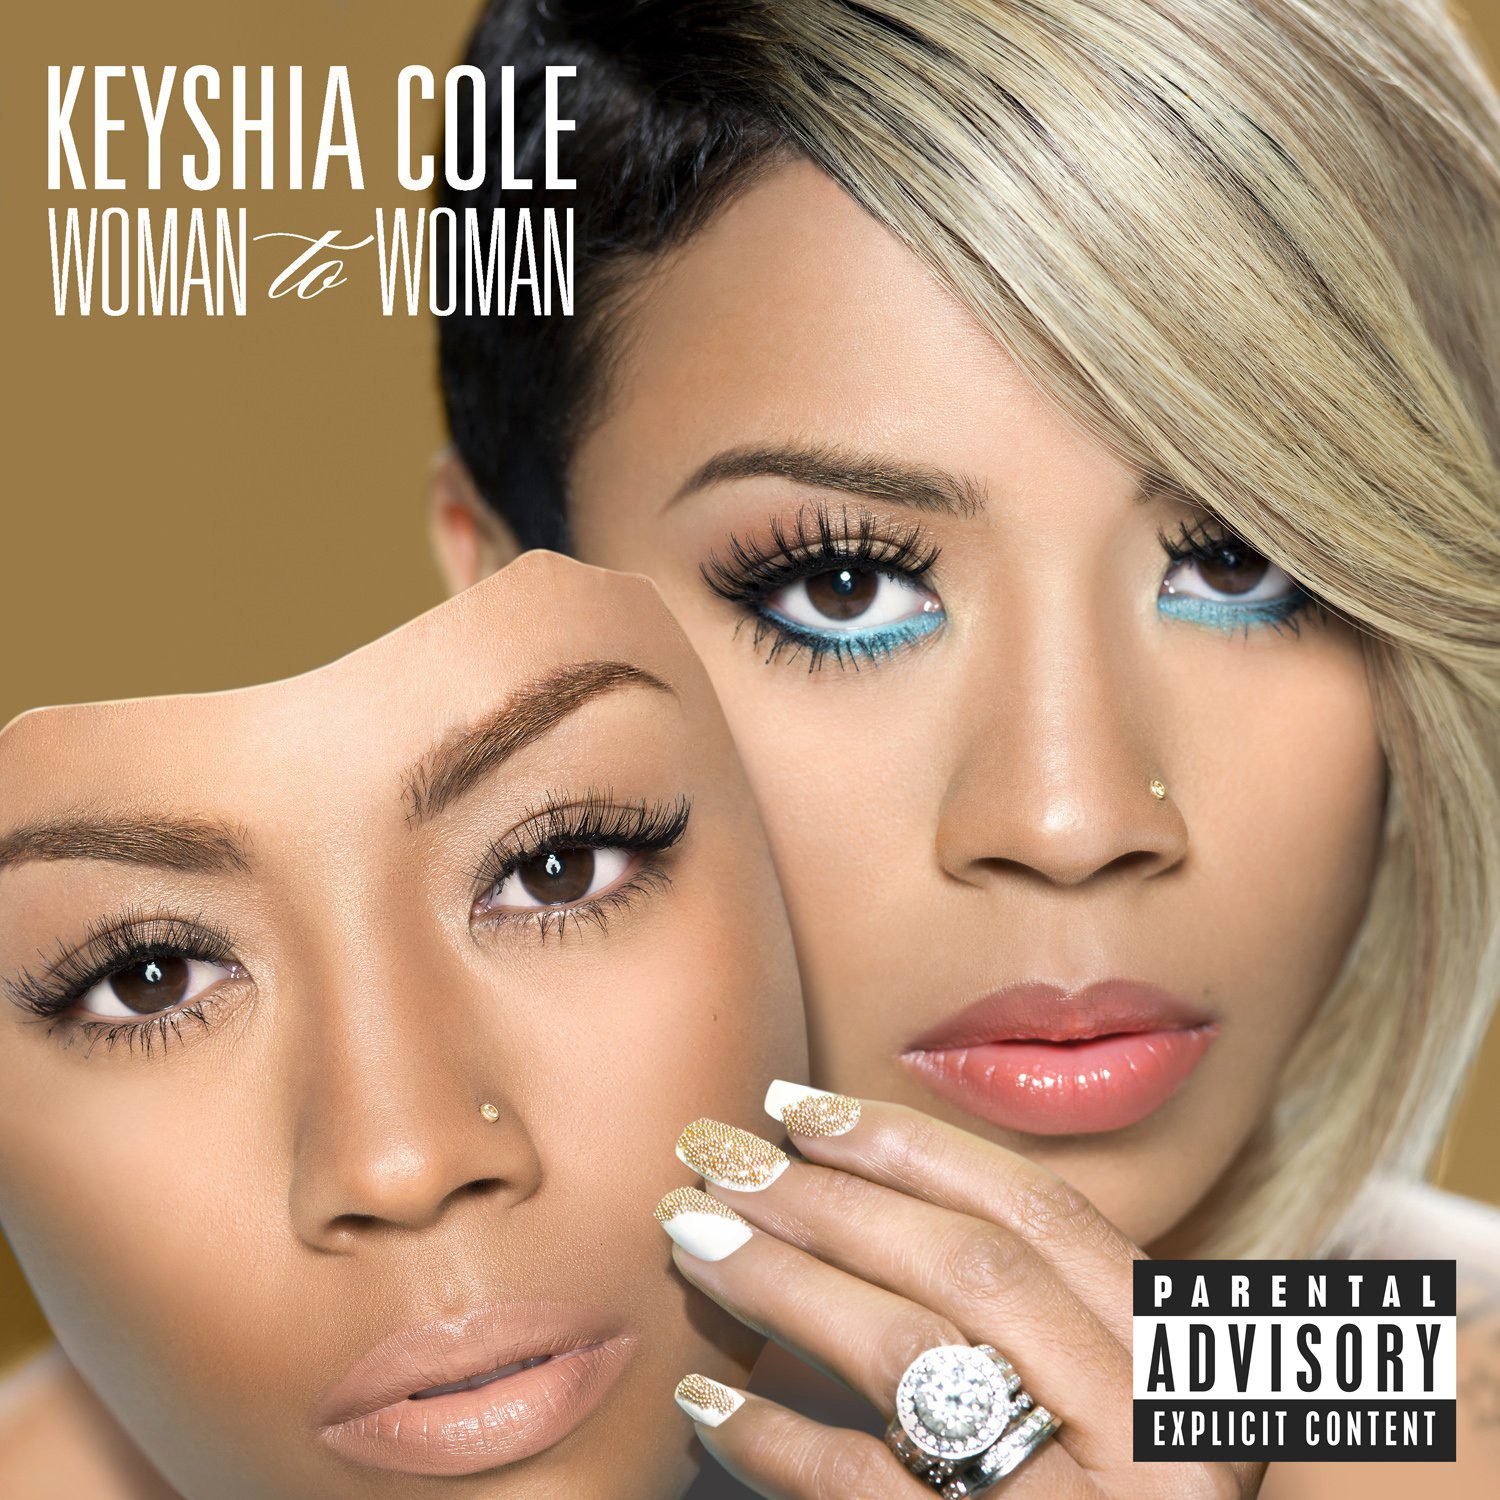 Keyshia Cole - Woman To Woman